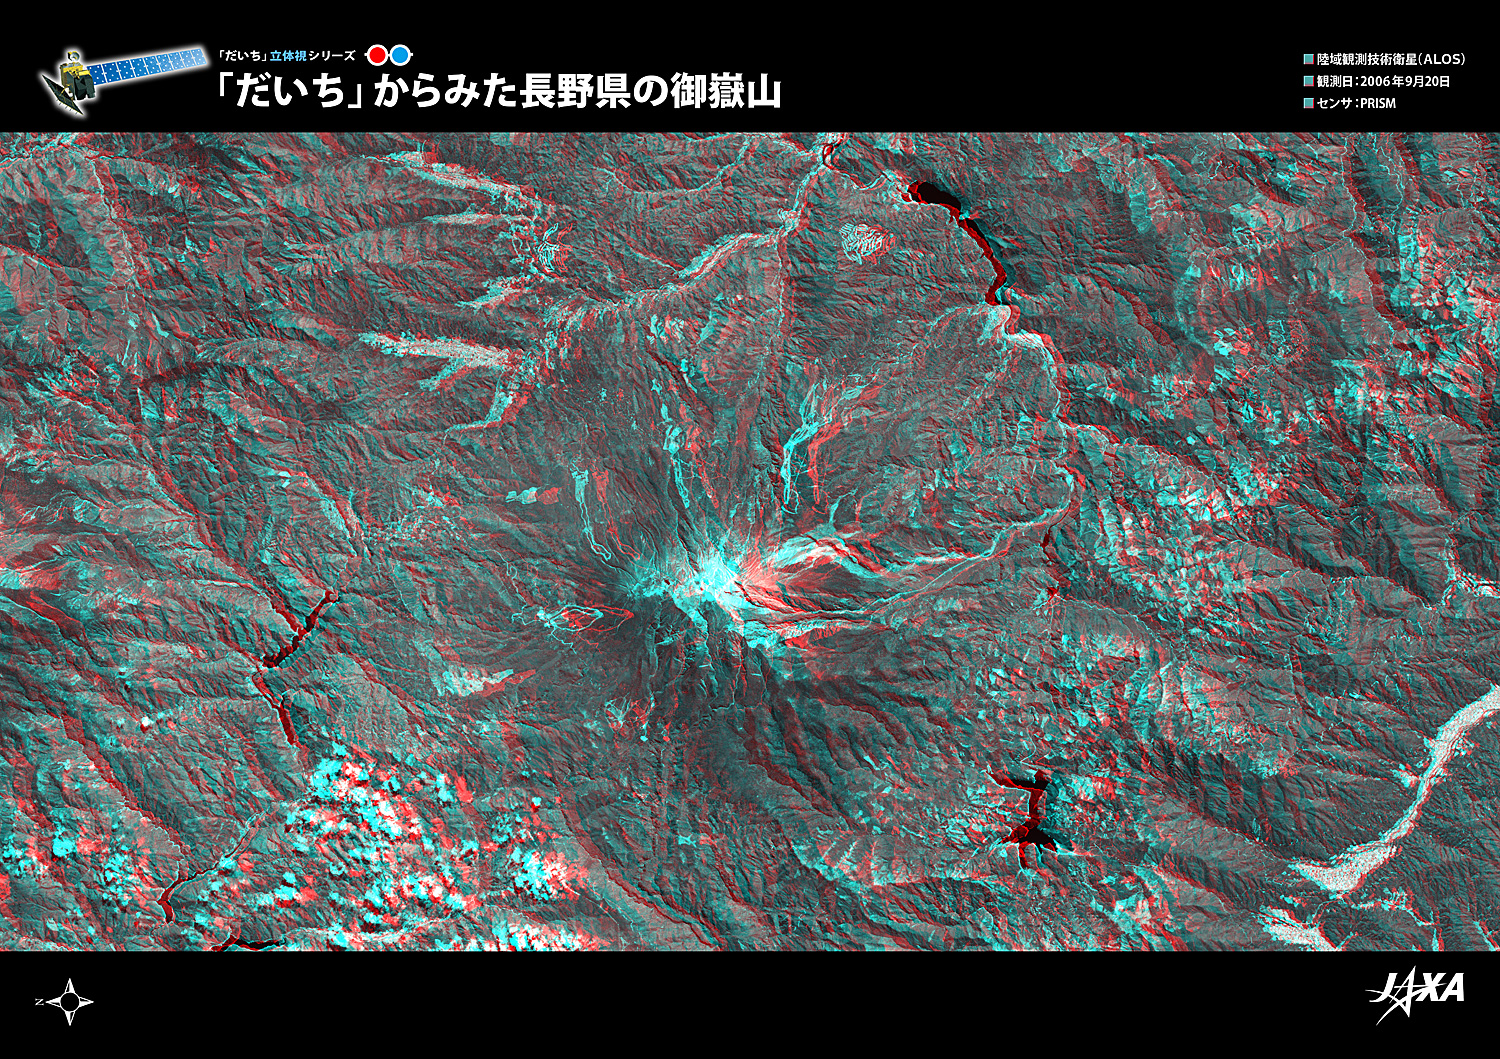 だいちから見た日本の都市 御嶽山立体視画像:衛星画像（ポスター仕上げ）